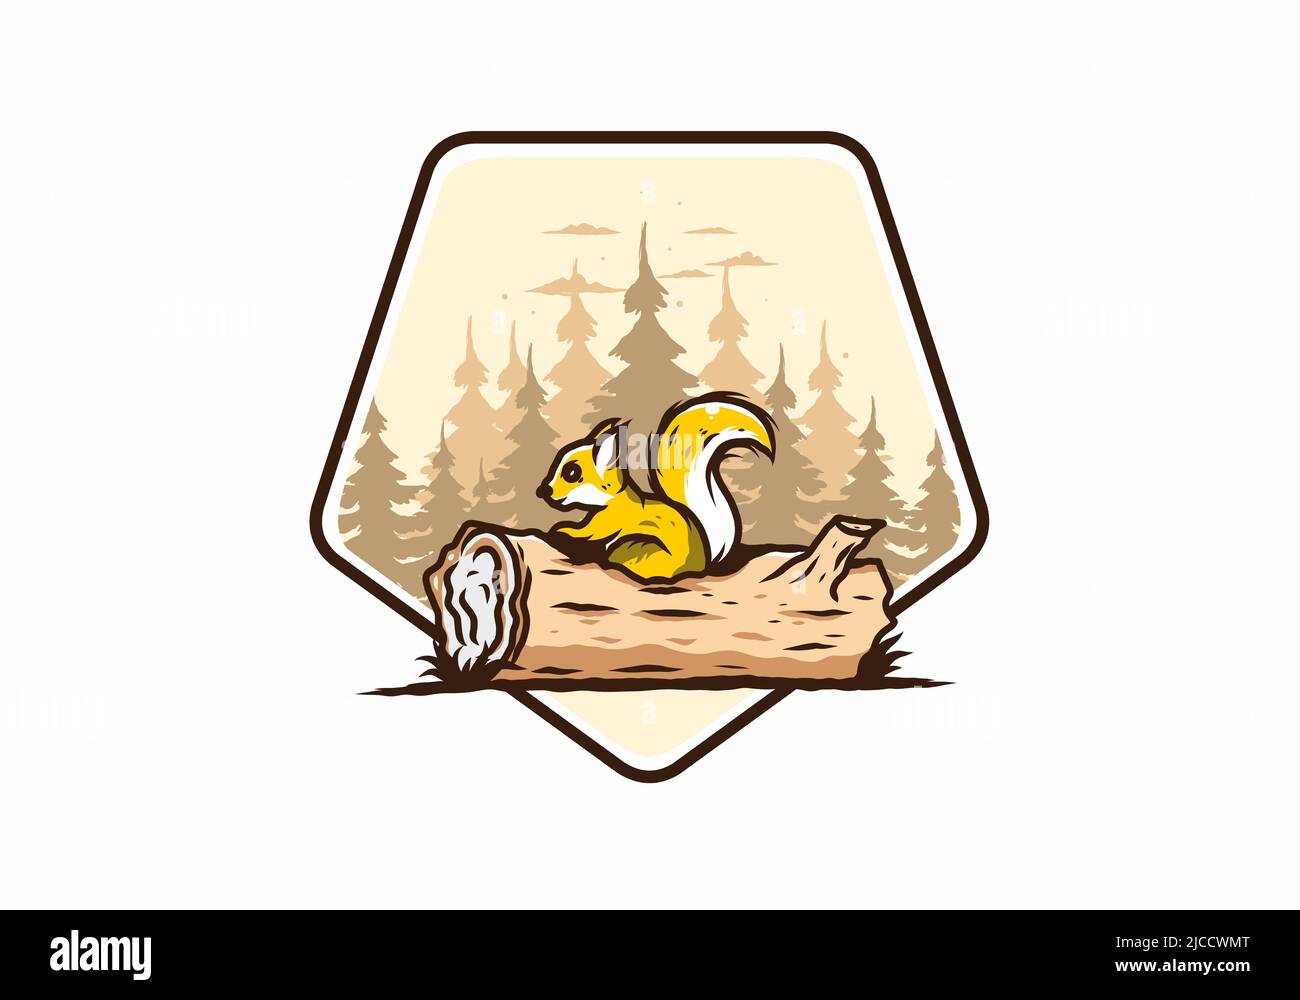 Einsames Eichhörnchen versteckt in einem toten Baumstamm Illustration Design Stock Vektor